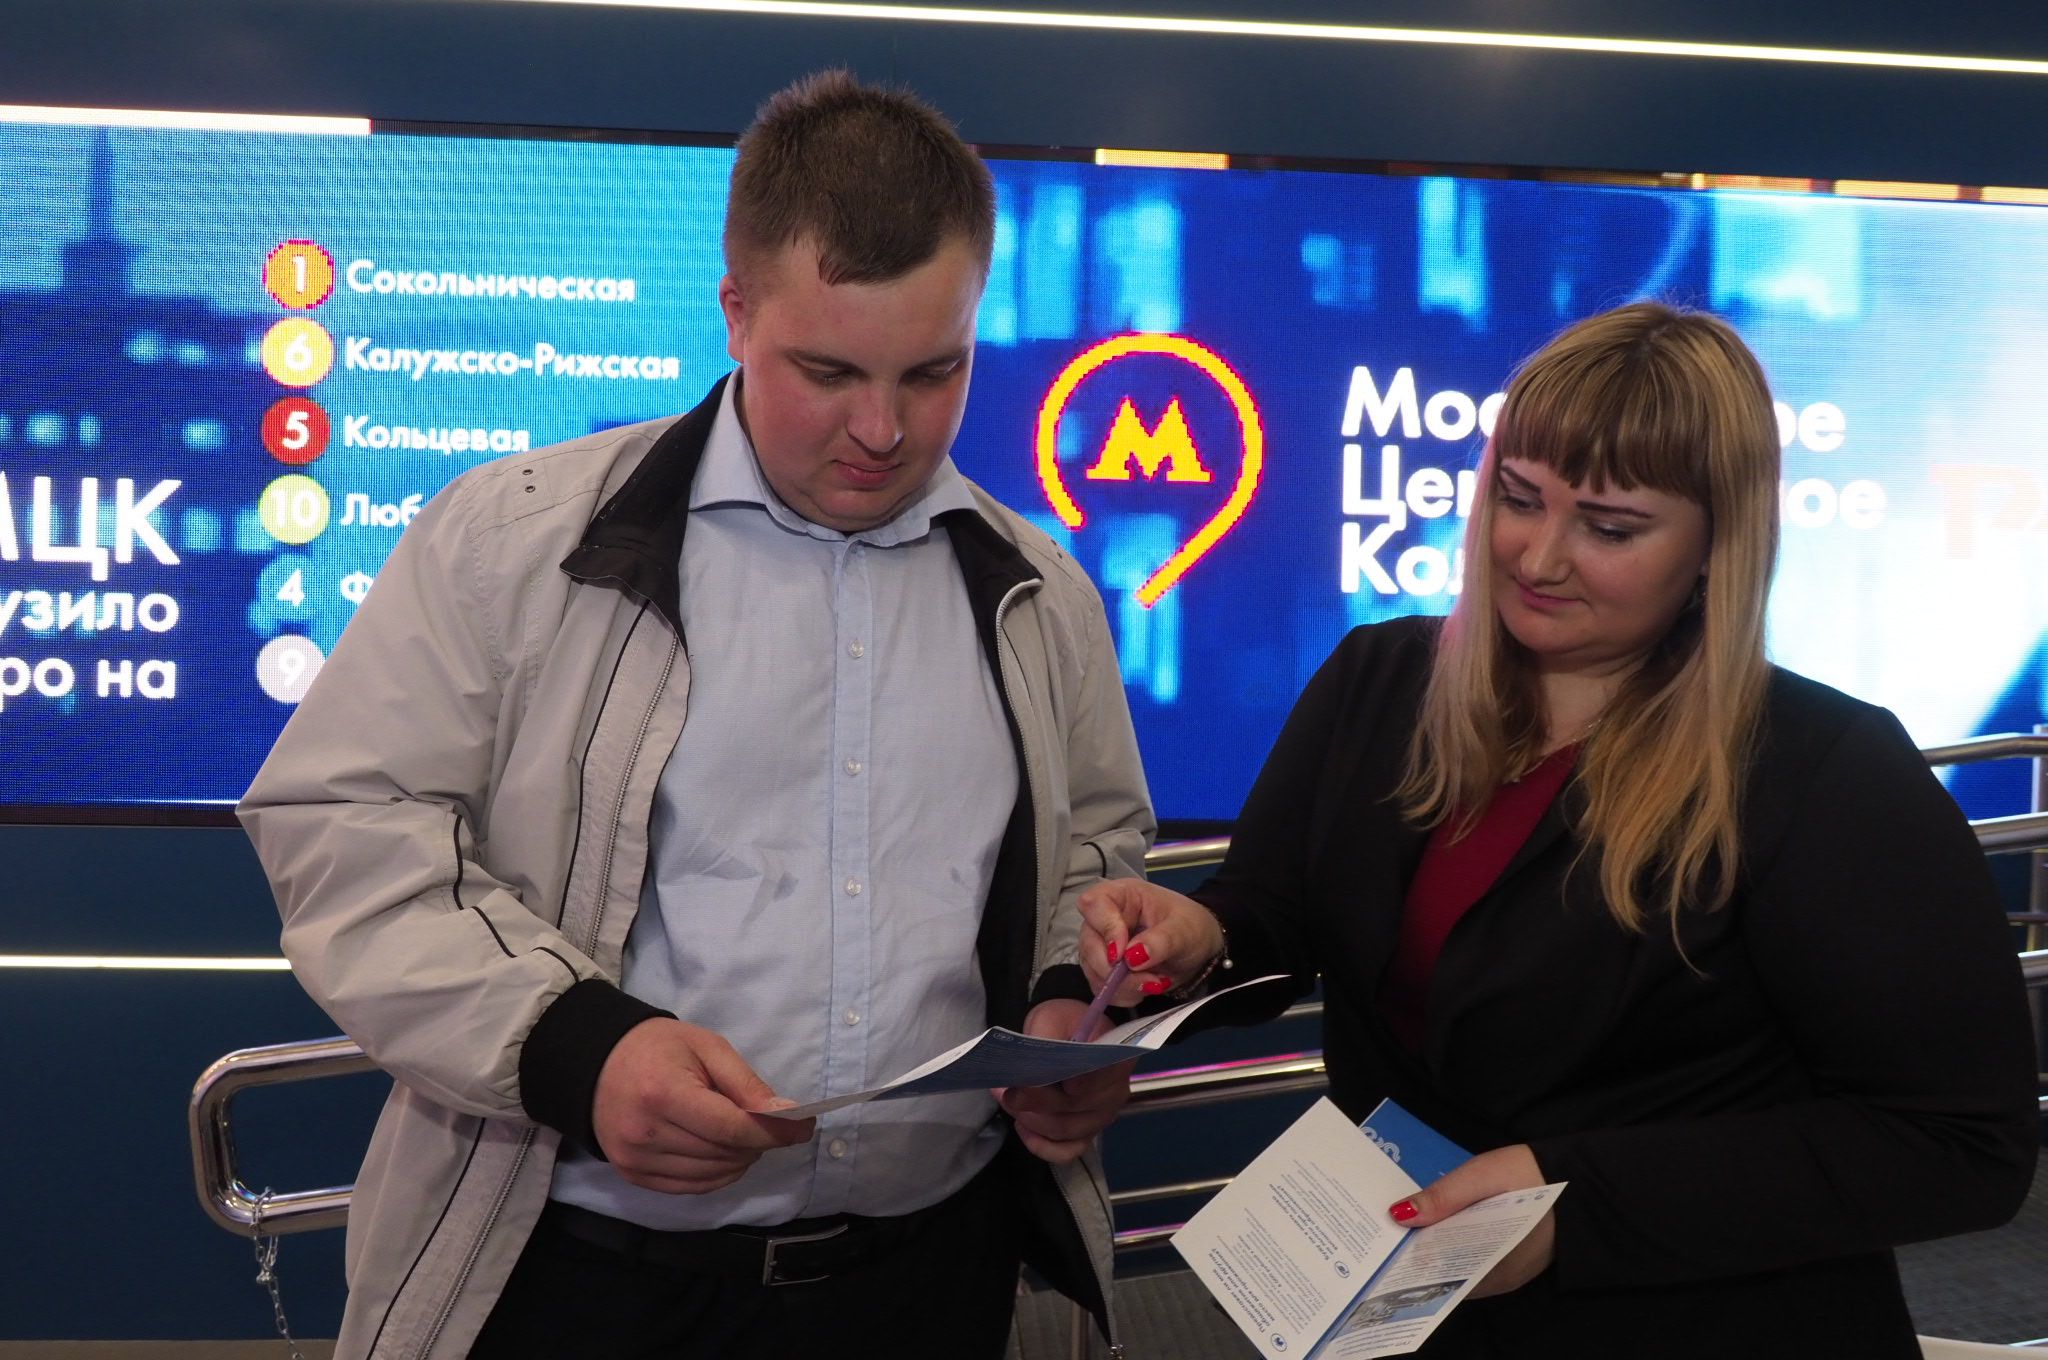 Москва и Подмосковье получат 31 тысячу рабочих мест благодаря МЦД